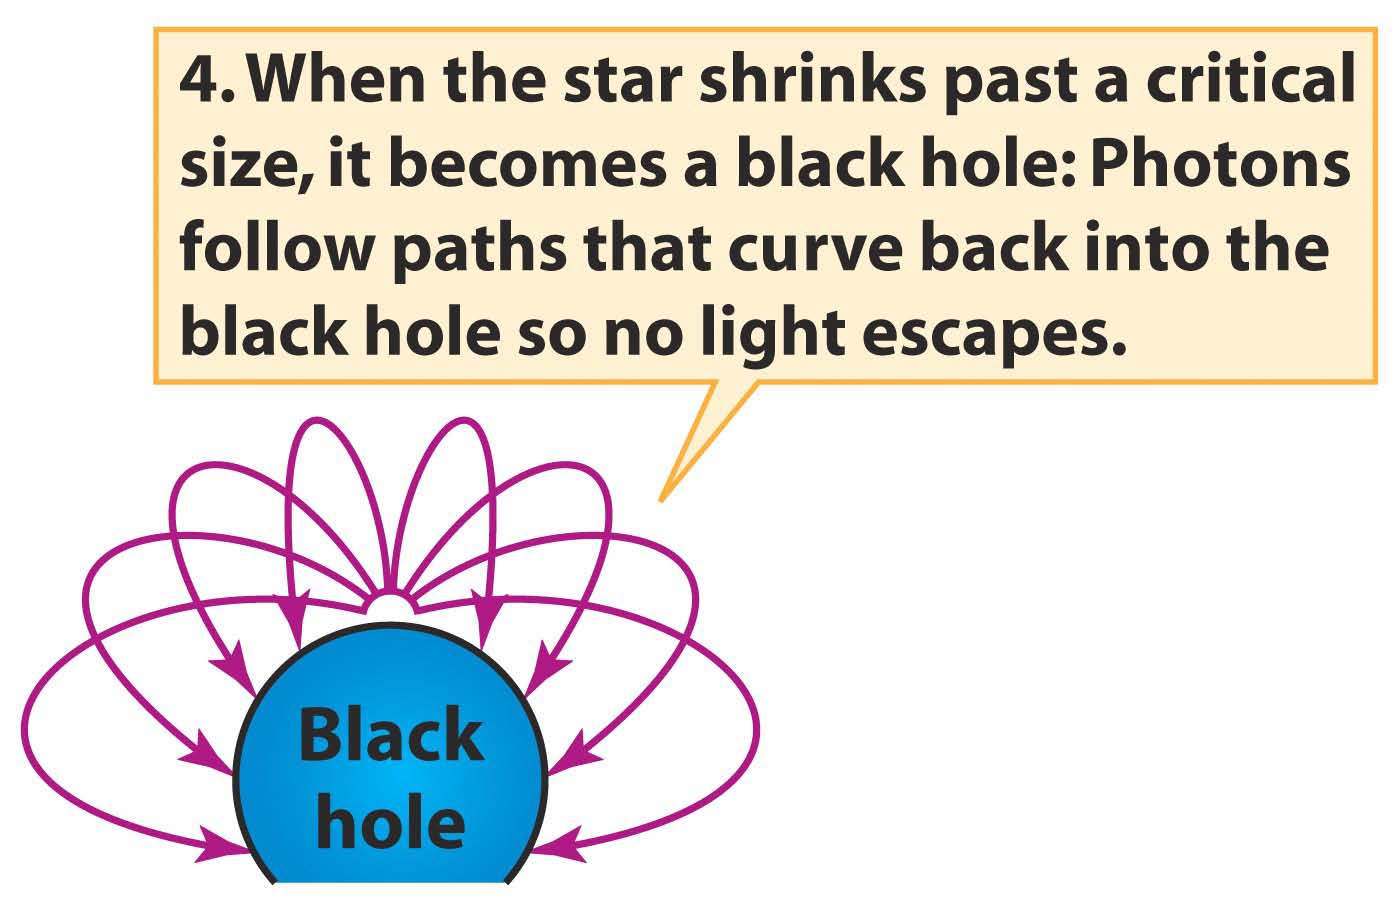 4. Όταν ο αστέρας συρρικνωθεί πέρα από μία κρίσιμη ακτίνα, μετατρέπεται σε μία μελανή οπή: Τα φωτόνια ακολουθούν κλειστές